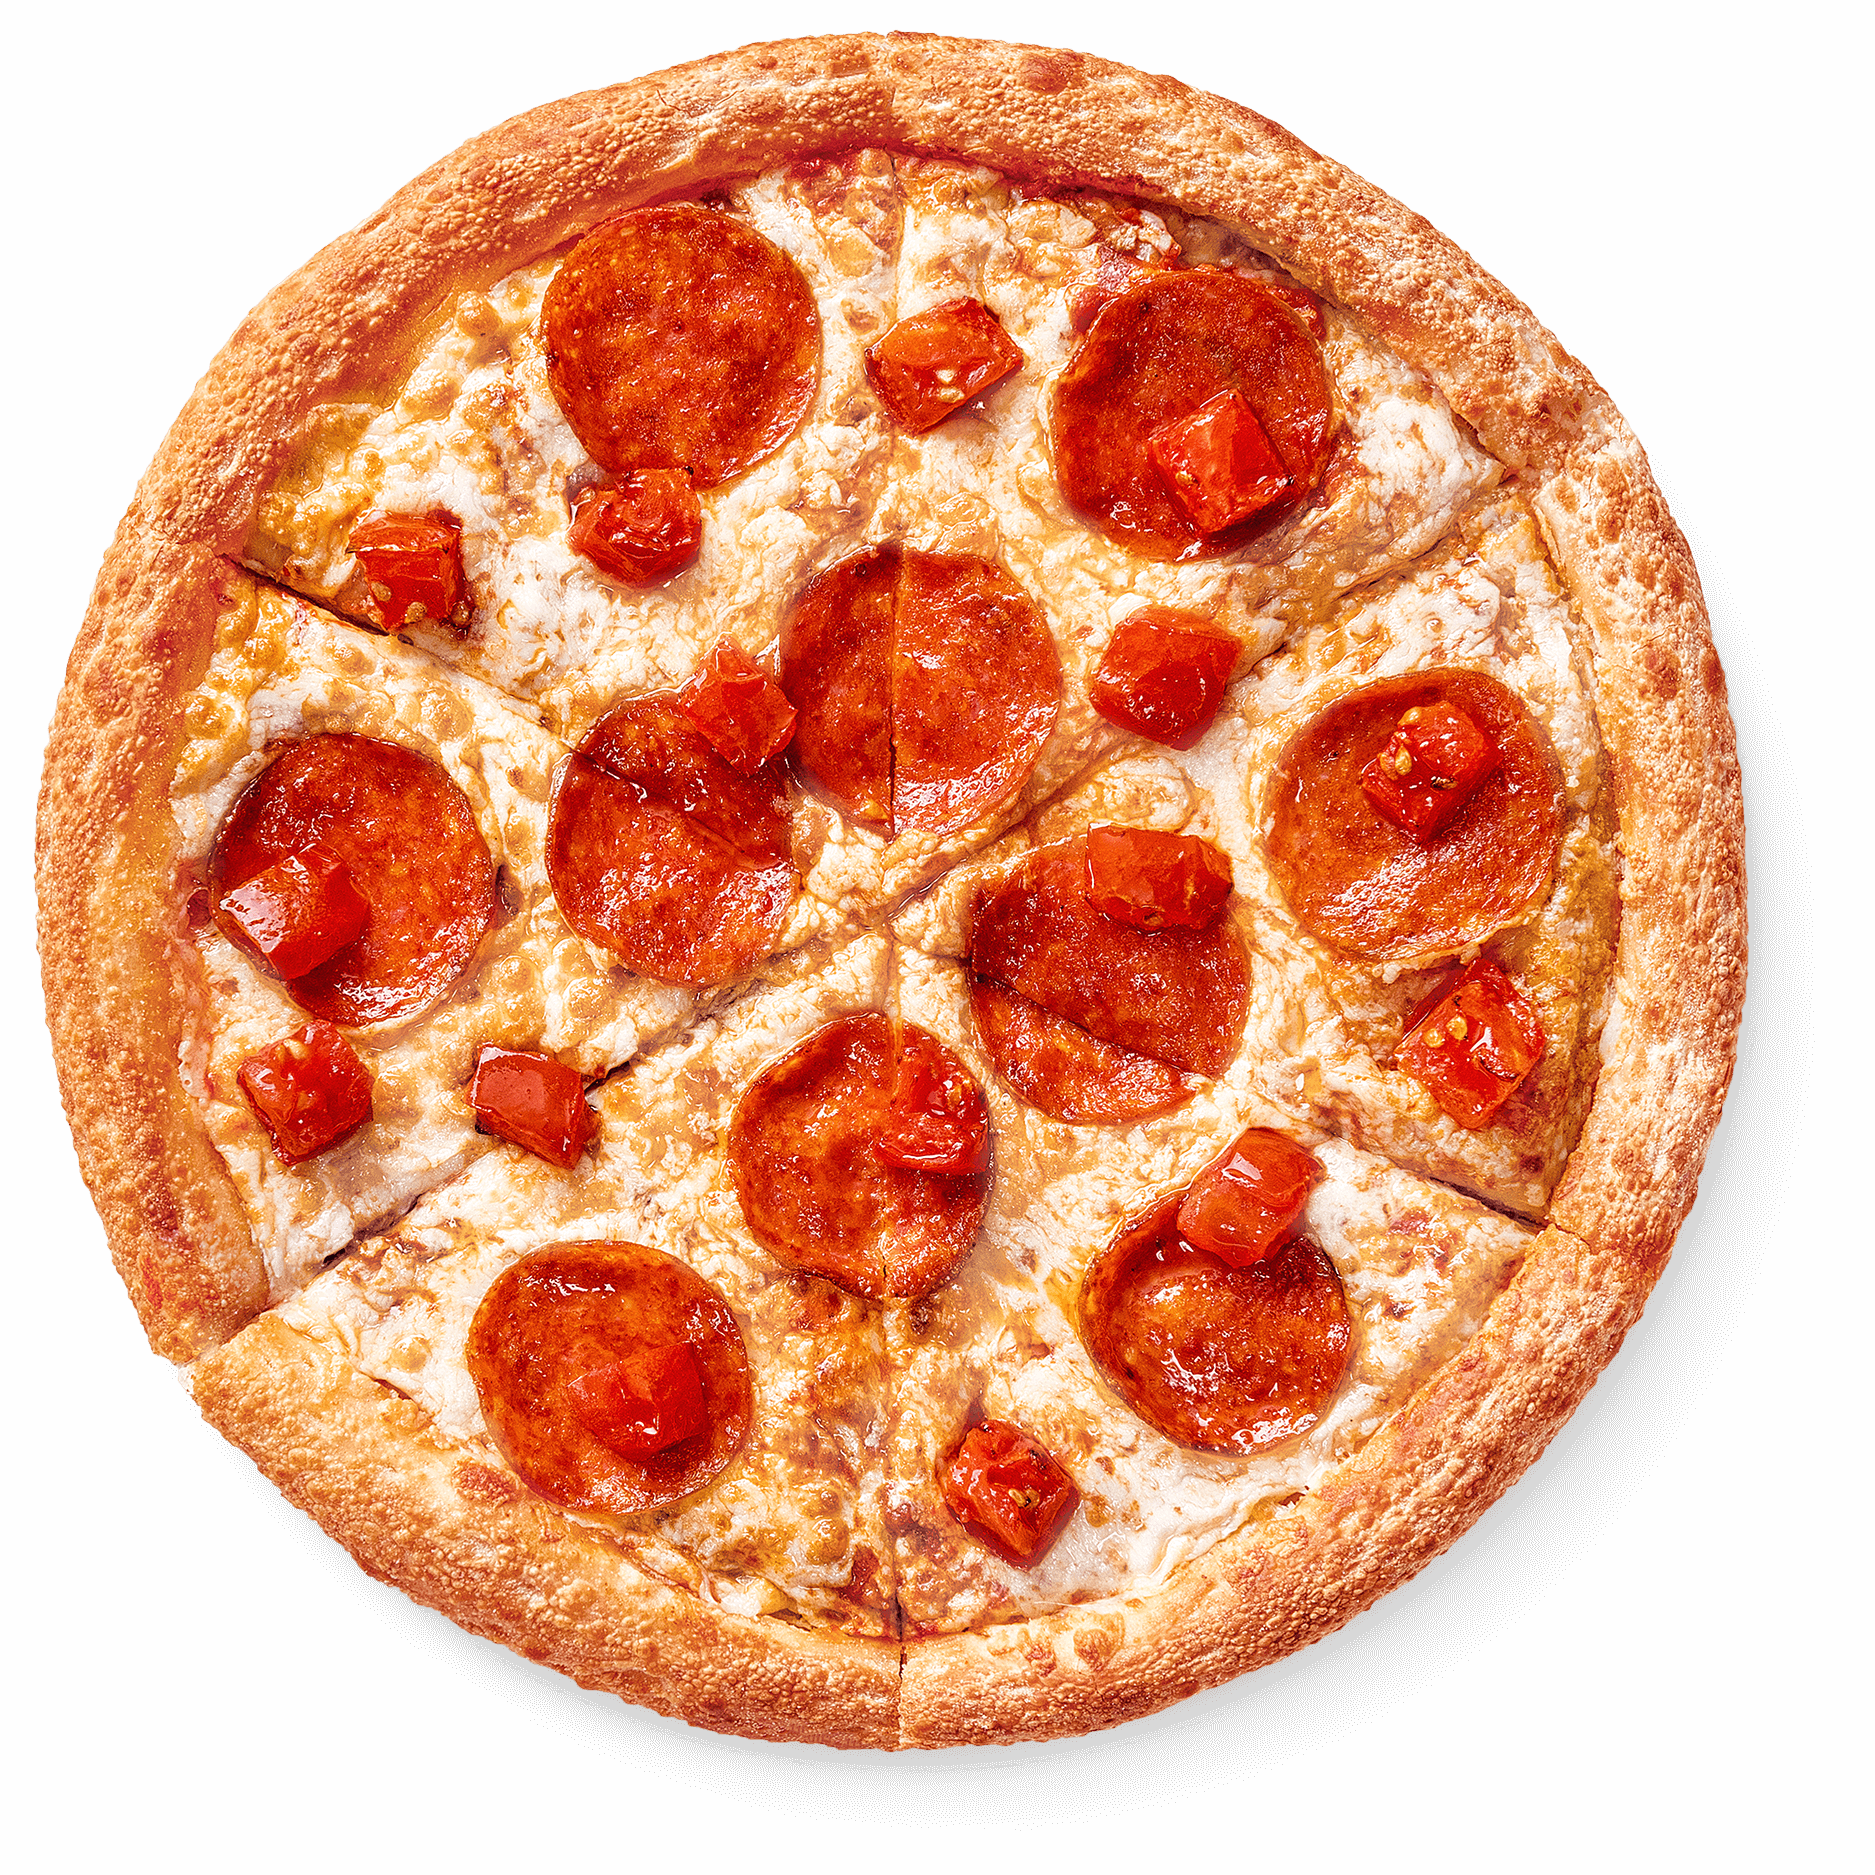 сколько калорий в куске пиццы пепперони из додо фото 14